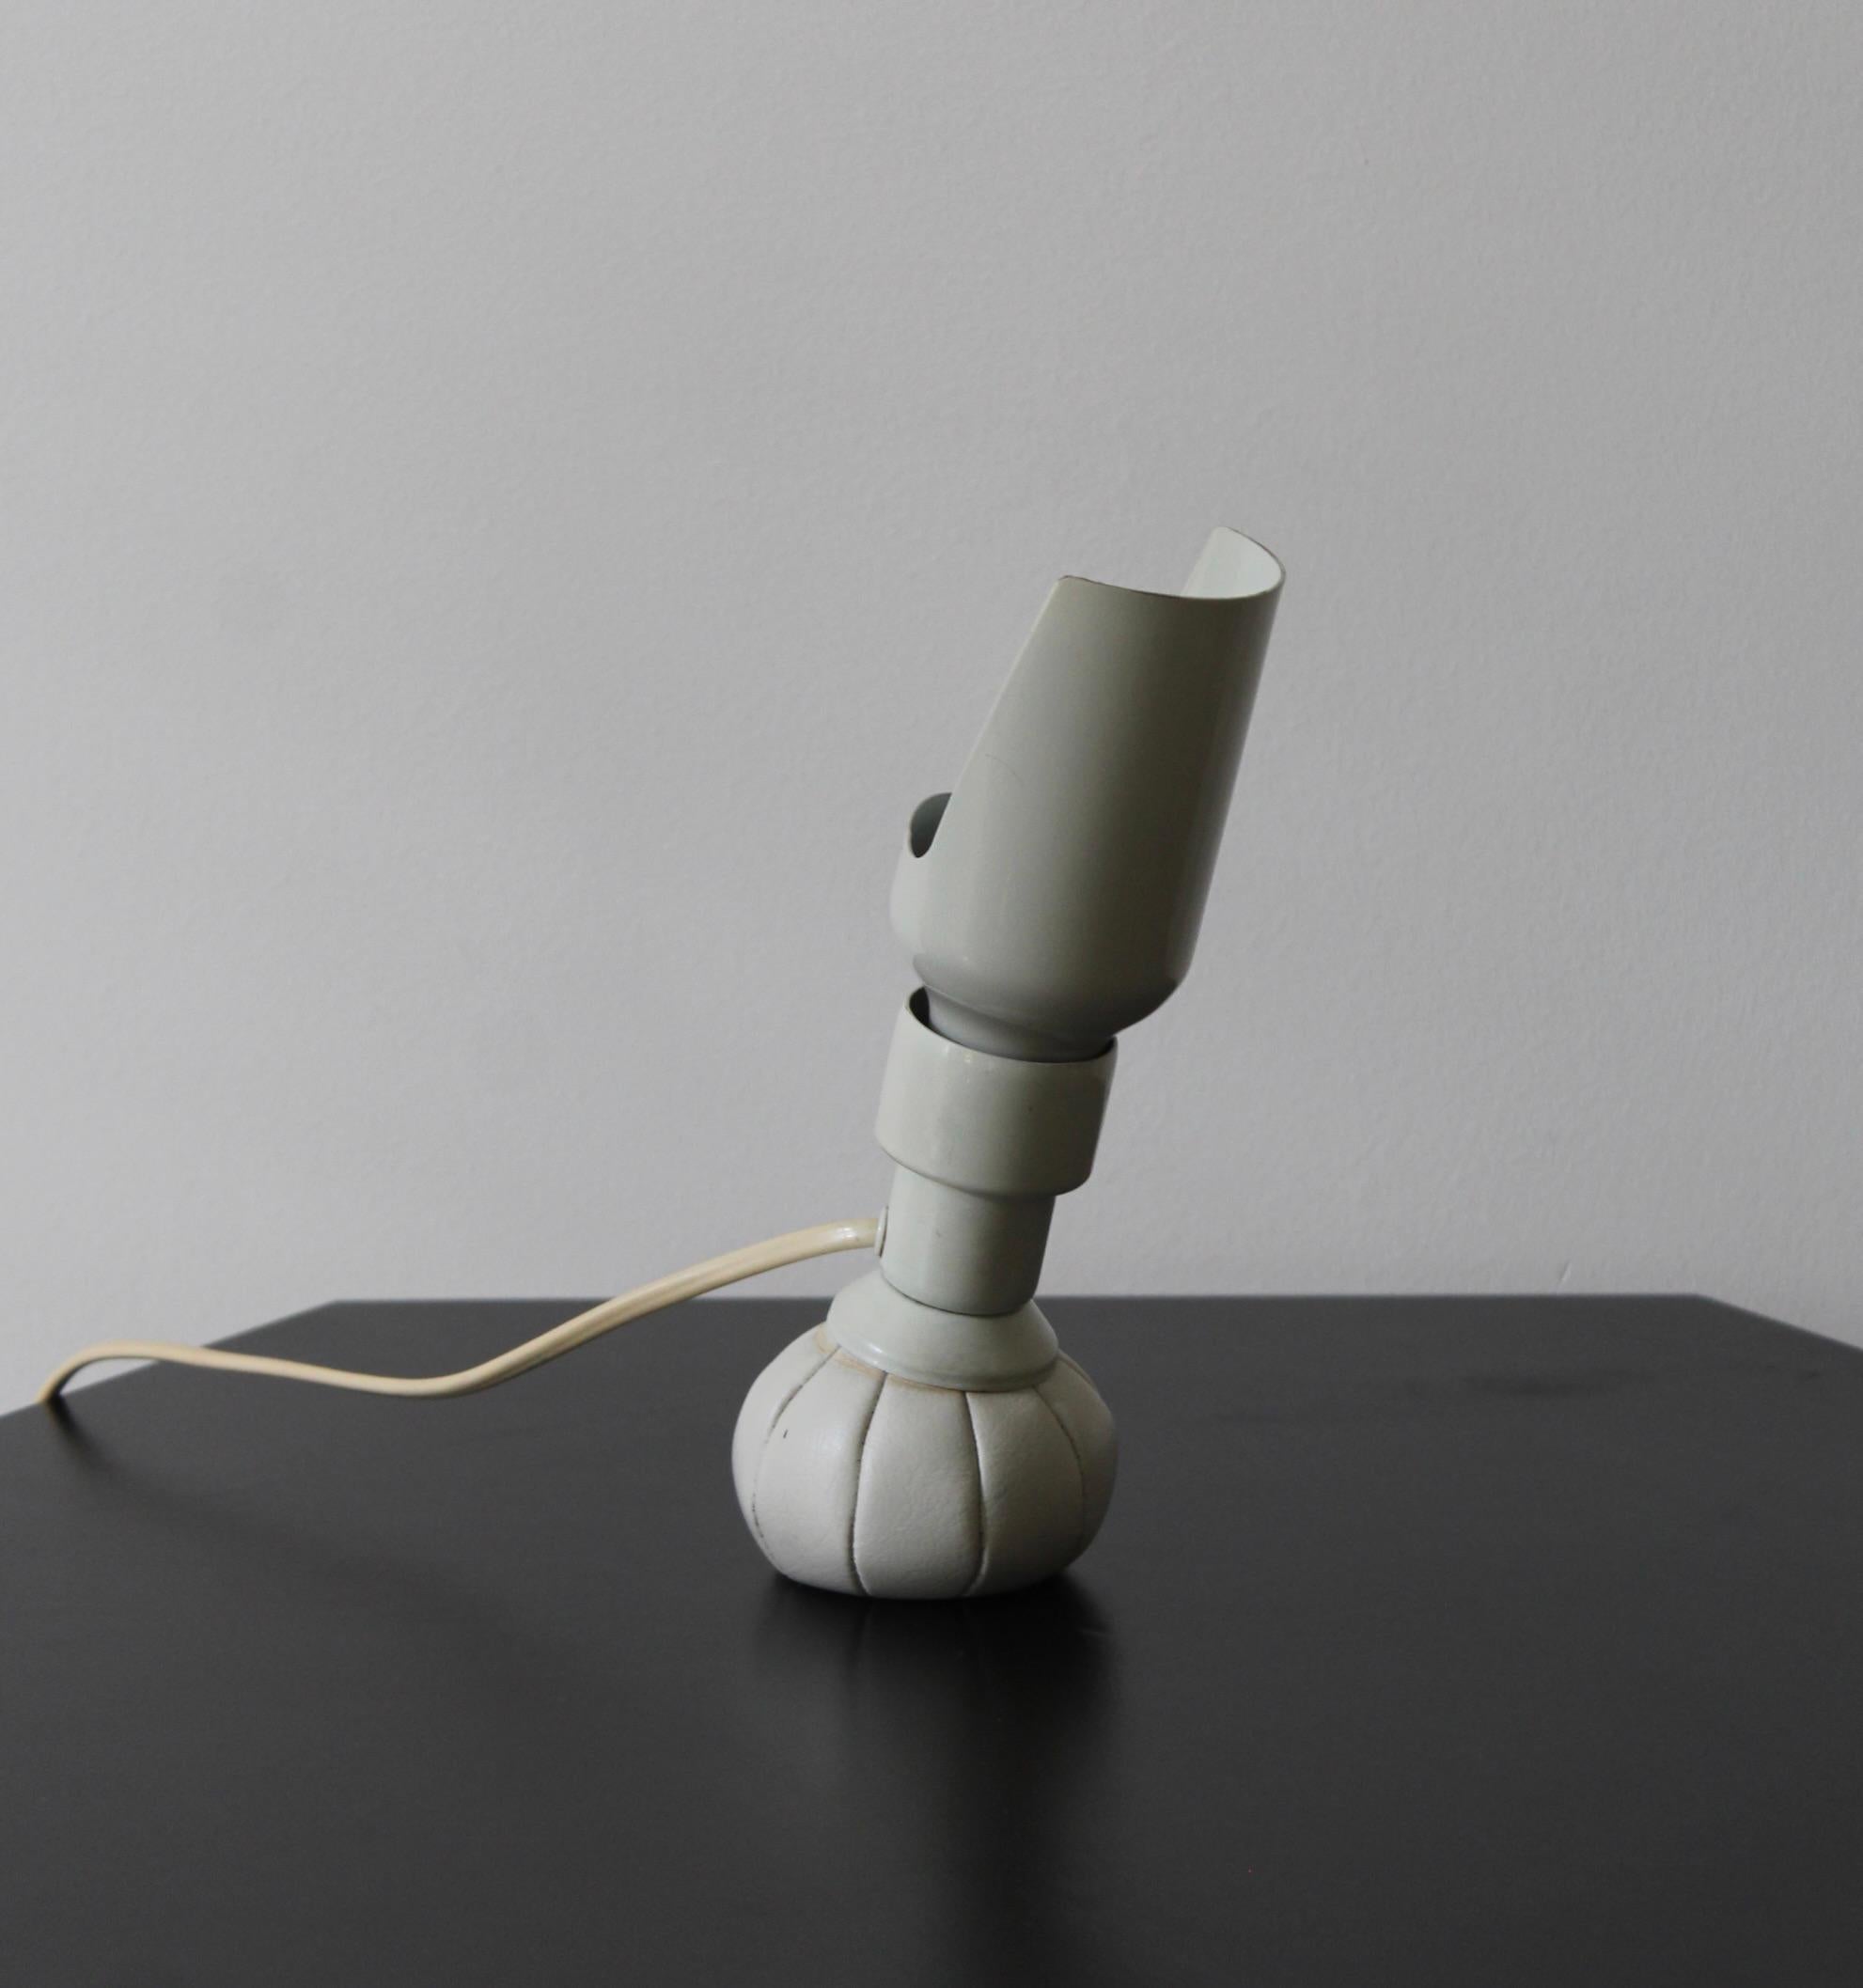 Une lampe de table réglable, conçue et produite par Gino Sarfatti pour Arteluce, Italie, 1966.

Une douille en métal laqué blanc est montée sur le socle en forme de pochette en cuir remplie de sable.